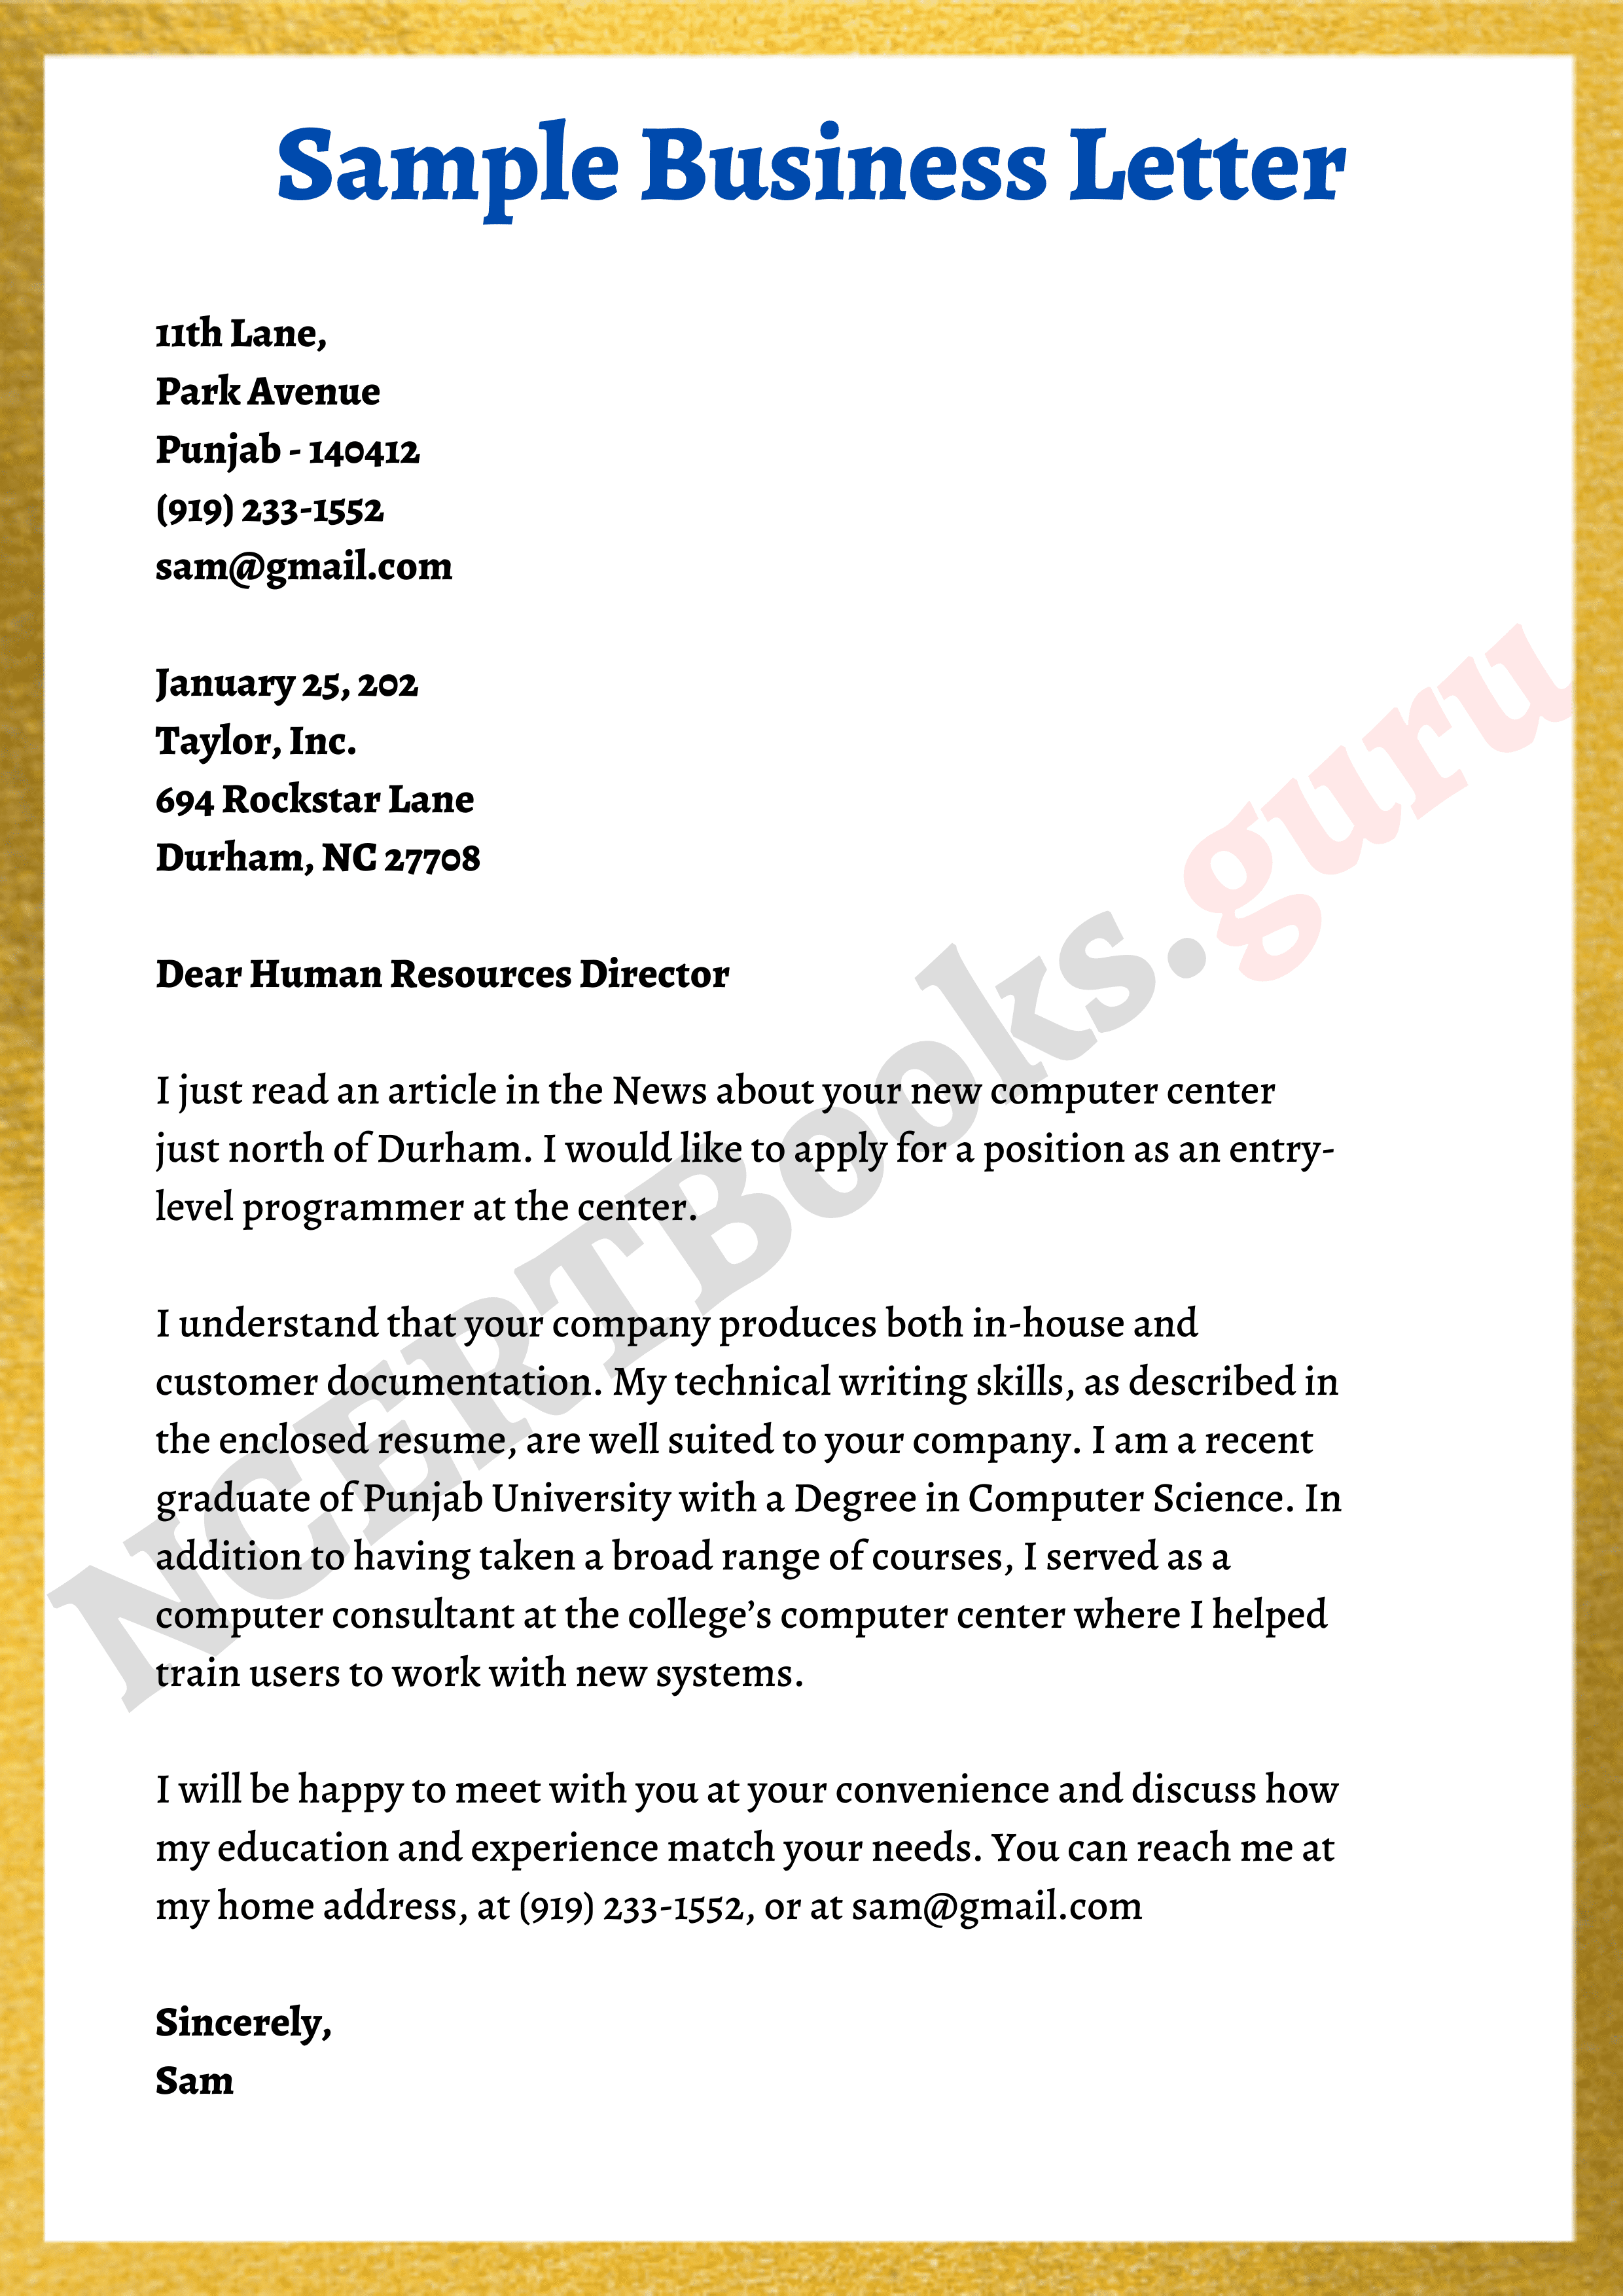 Sample Business Letter